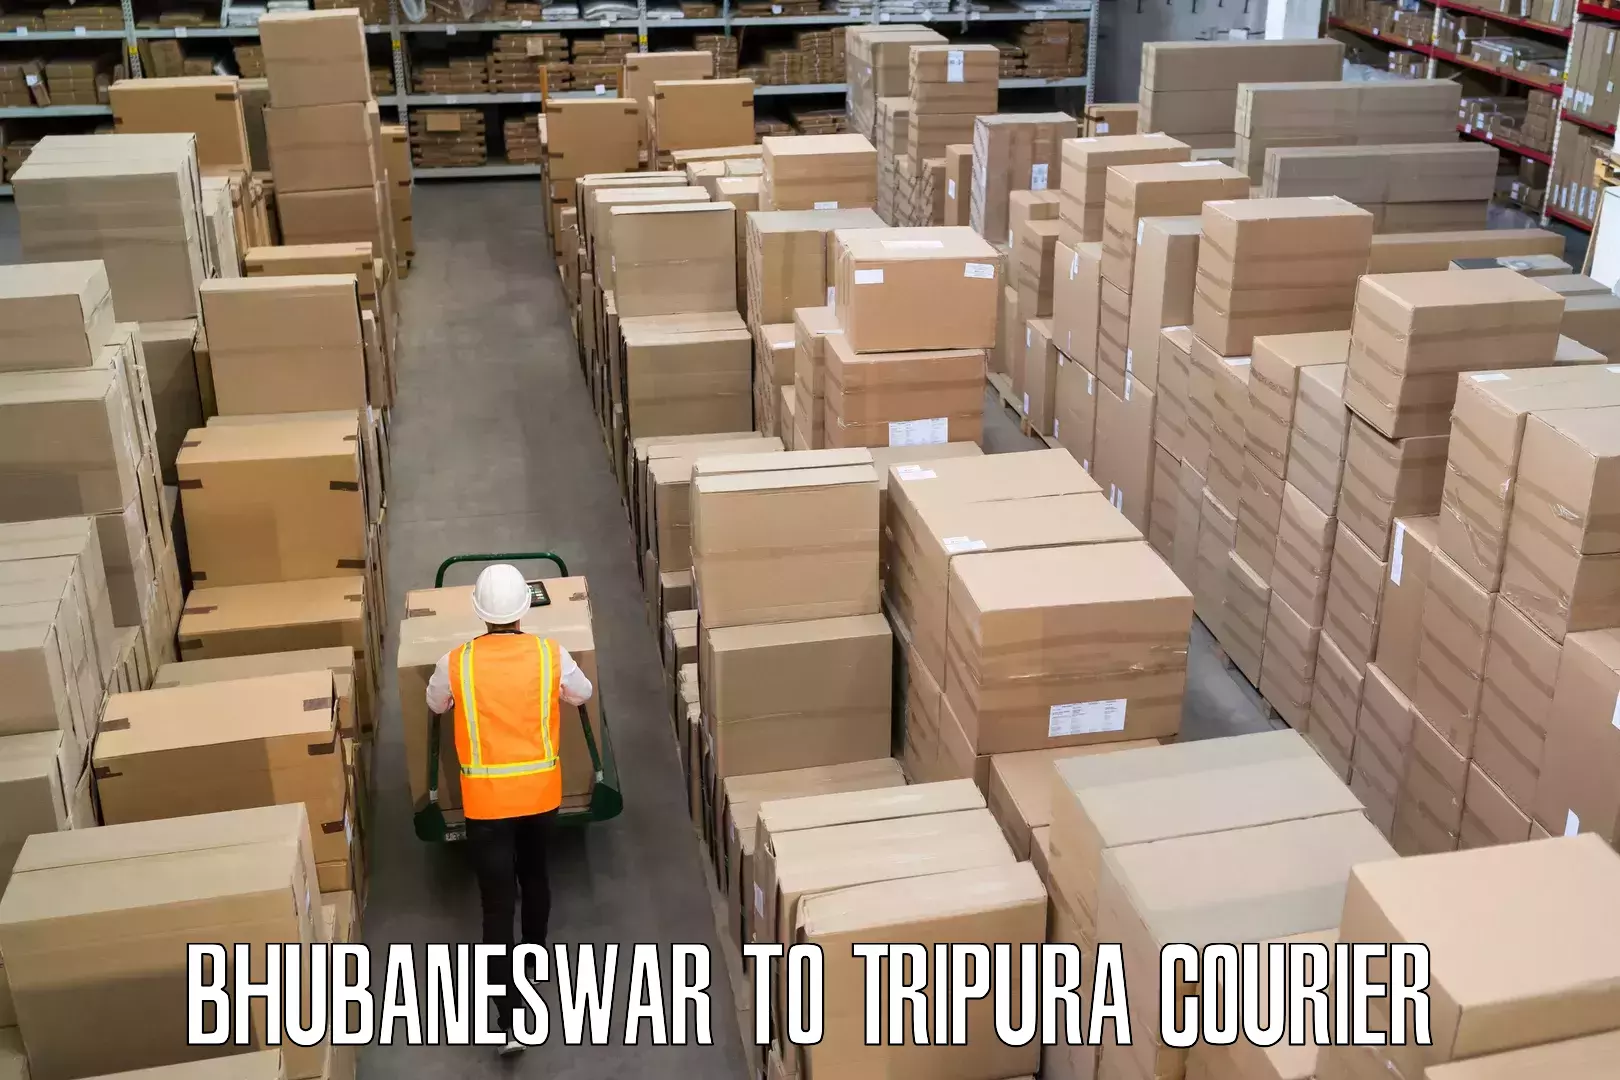 Baggage transport network Bhubaneswar to Tripura